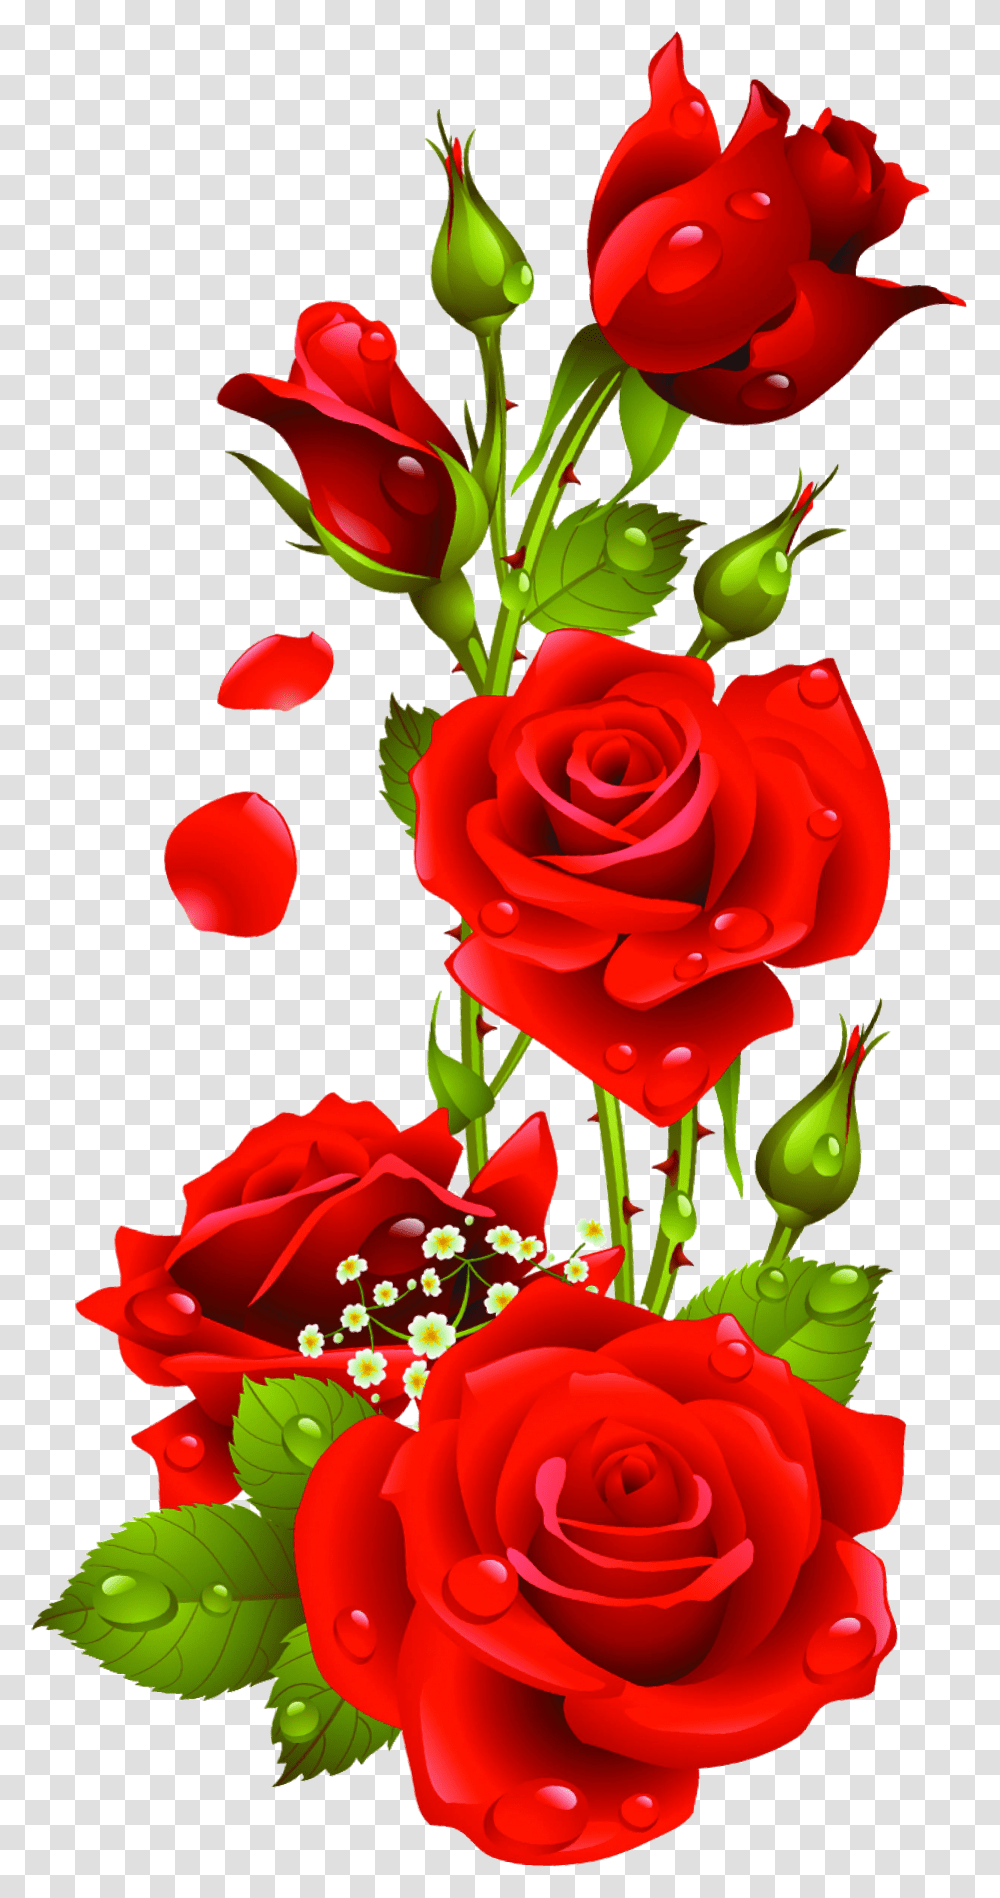 Red Rose Flower Images Download Transparent Png